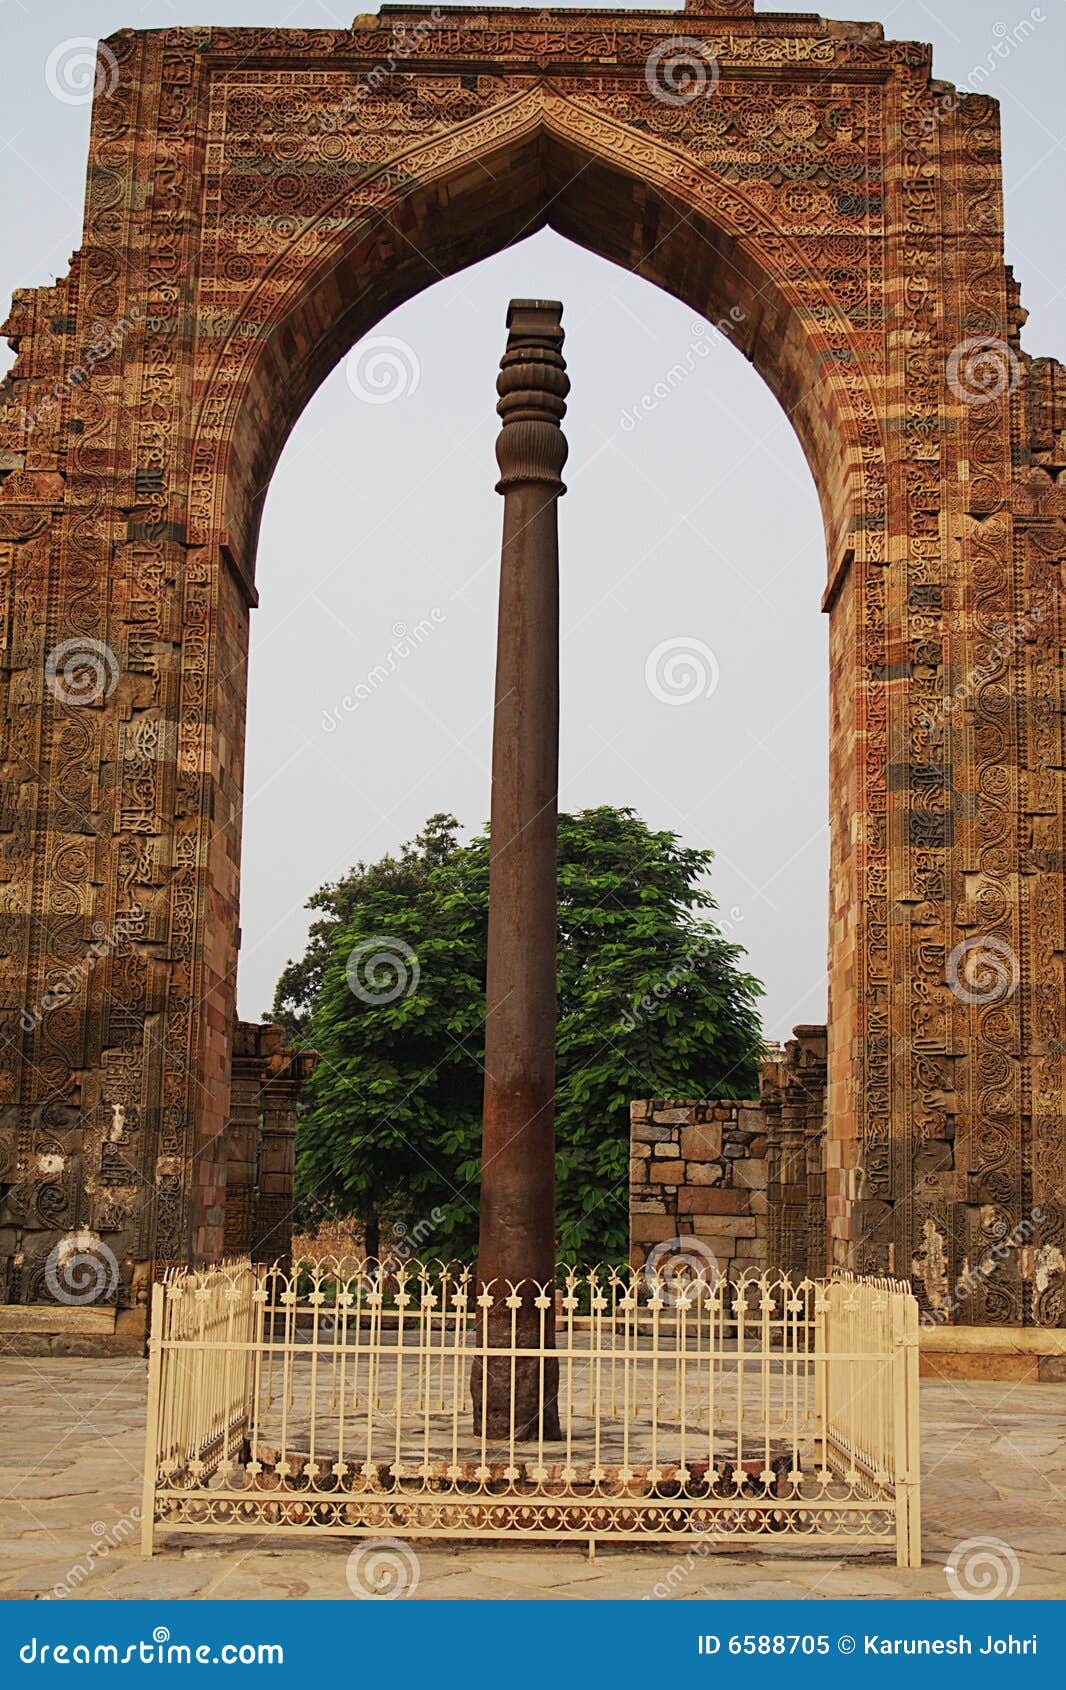 iron pillar of delhi